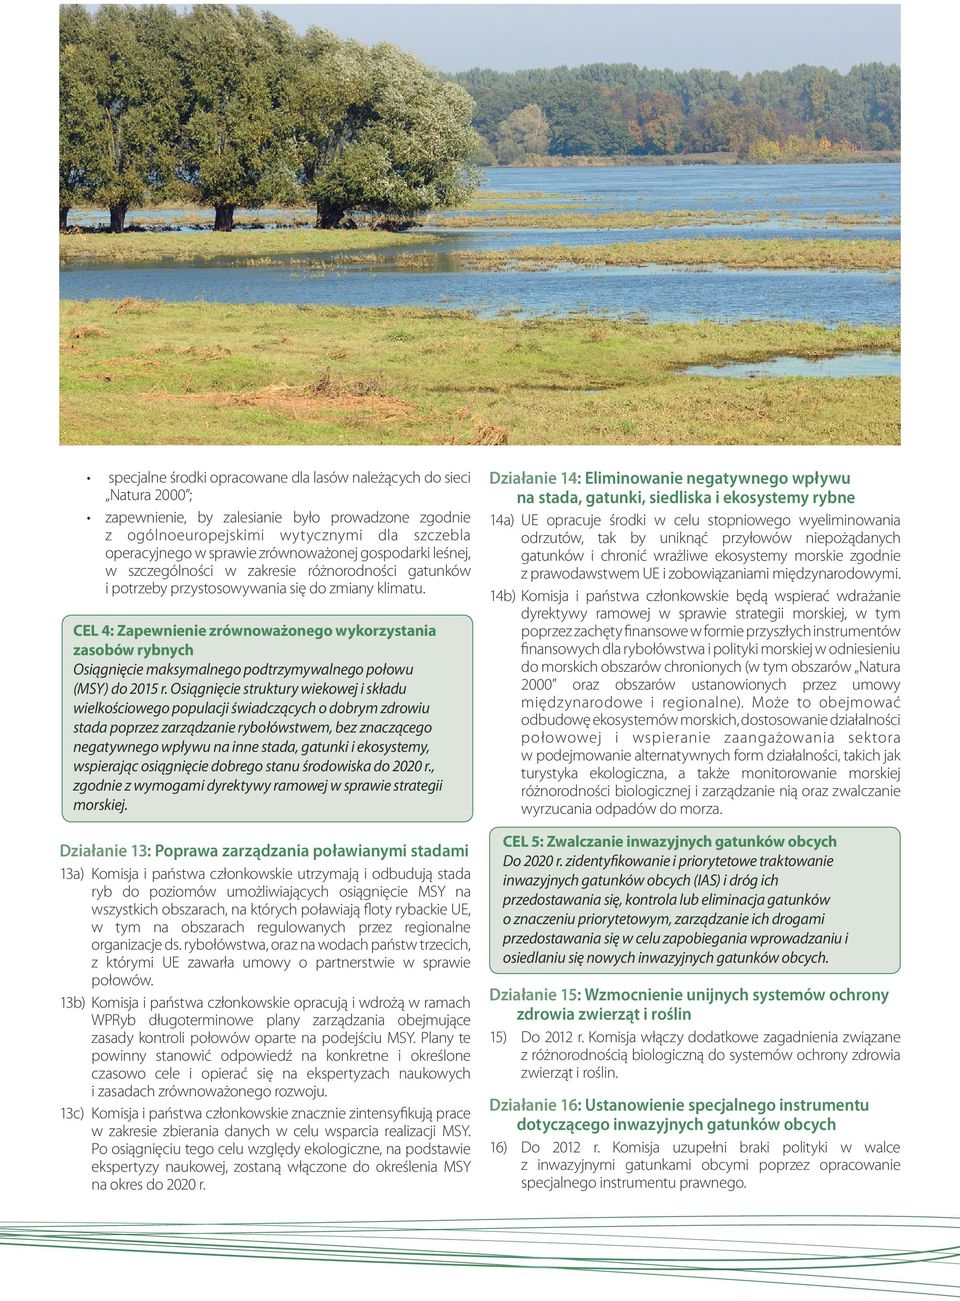 CEL 4: Zapewnienie zrównoważonego wykorzystania zasobów rybnych Osiągnięcie maksymalnego podtrzymywalnego połowu (MSY) do 2015 r.